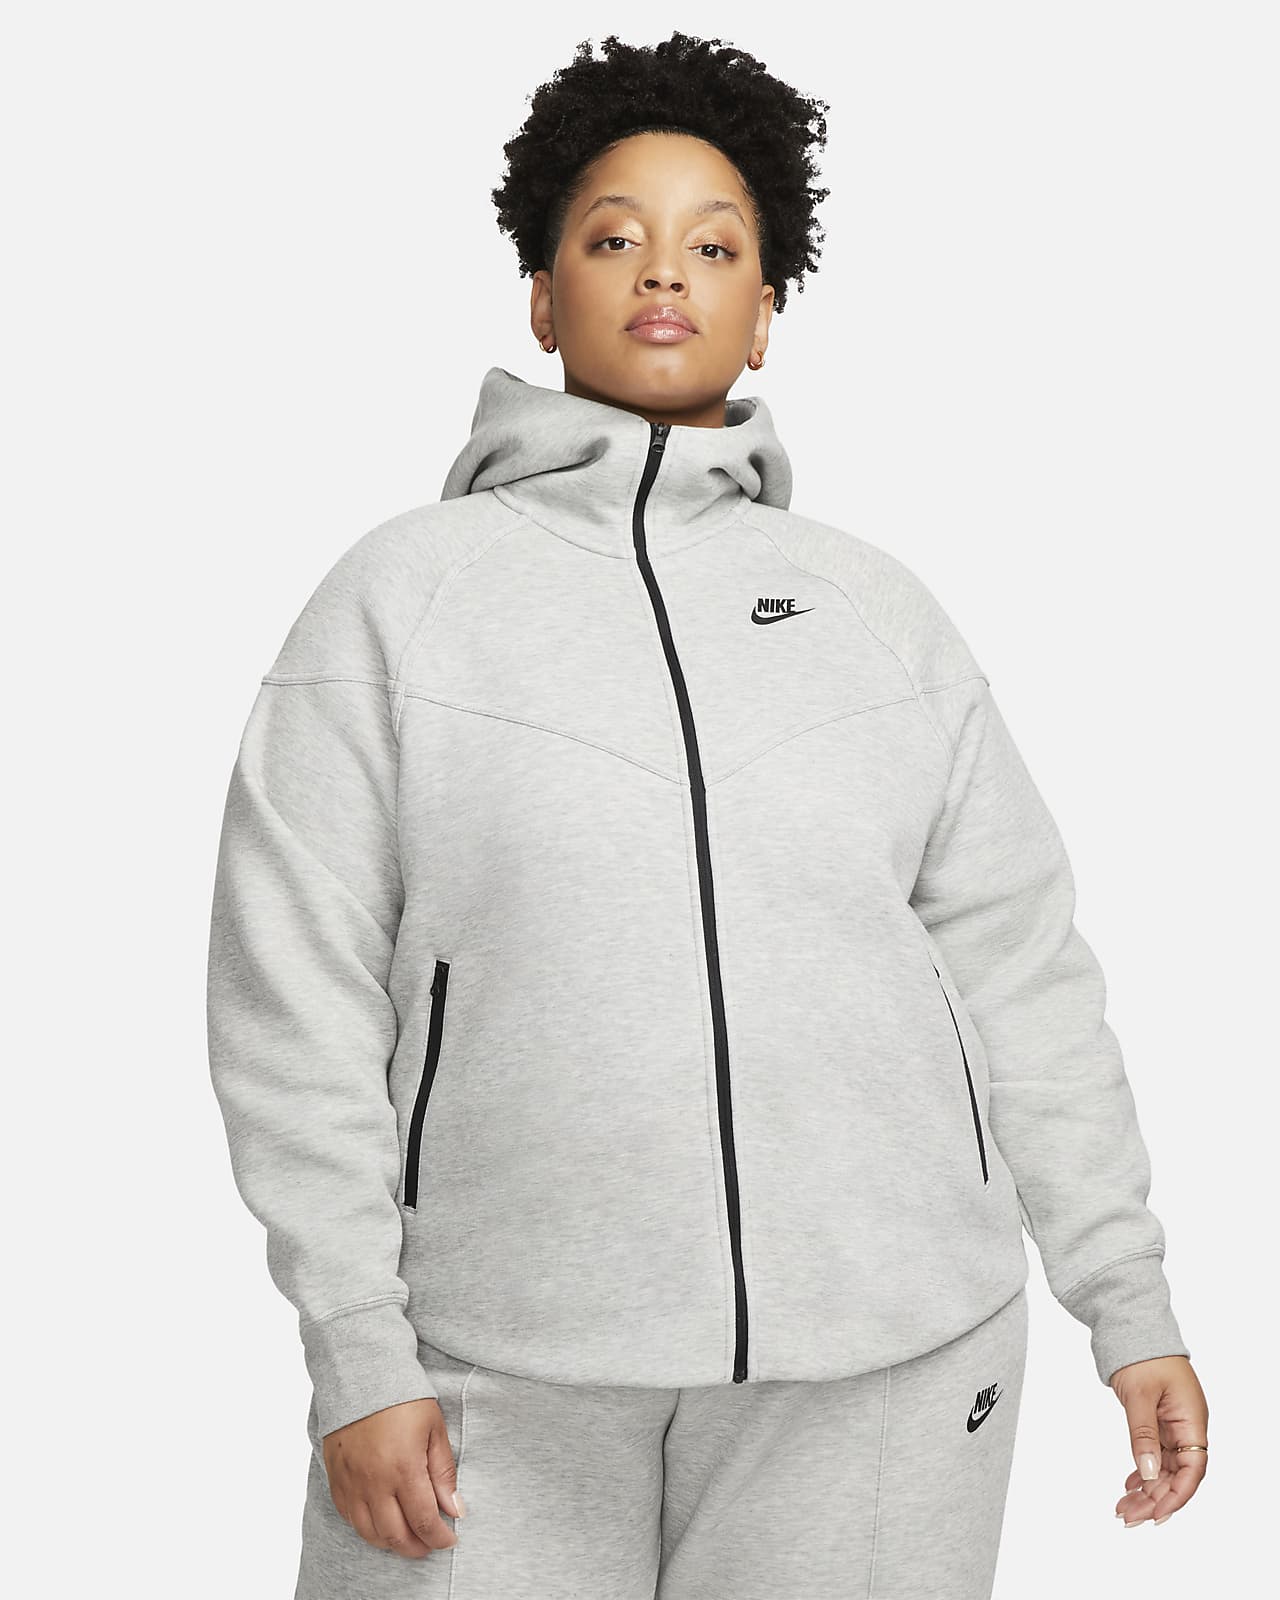 Γυναικεία μπλούζα με κουκούλα και φερμουάρ σε όλο το μήκος Nike Sportswear Tech Fleece Windrunner (μεγάλα μεγέθη)